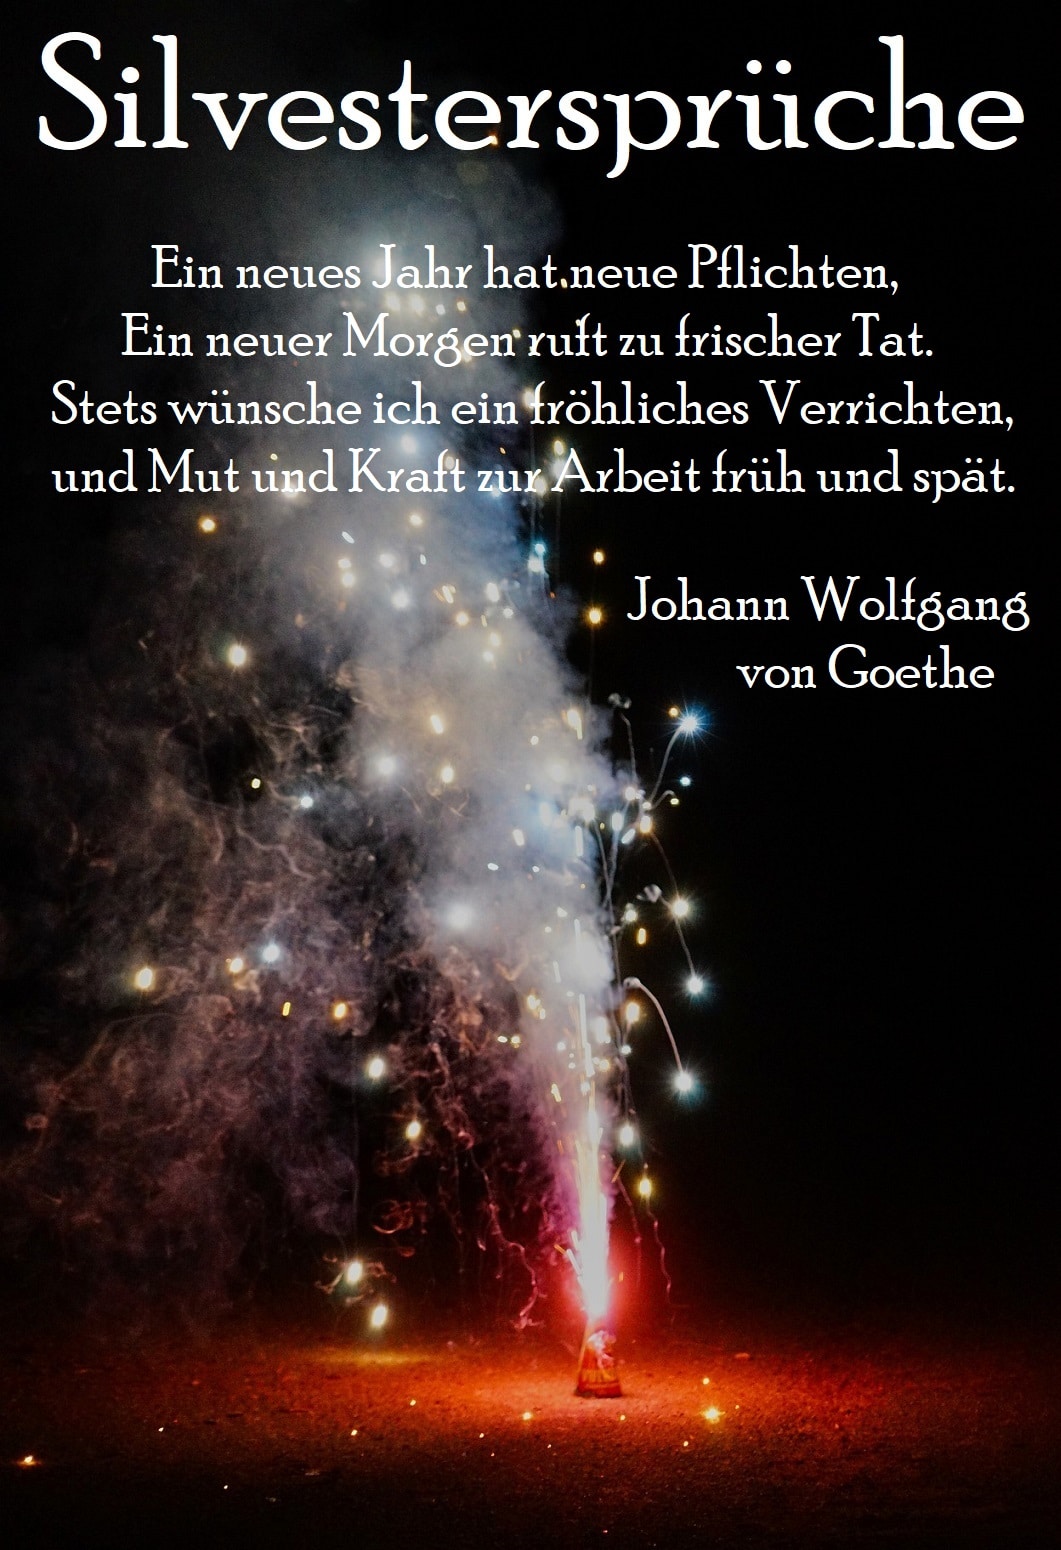 Johann Wolfgang von Goethe Spruch 5